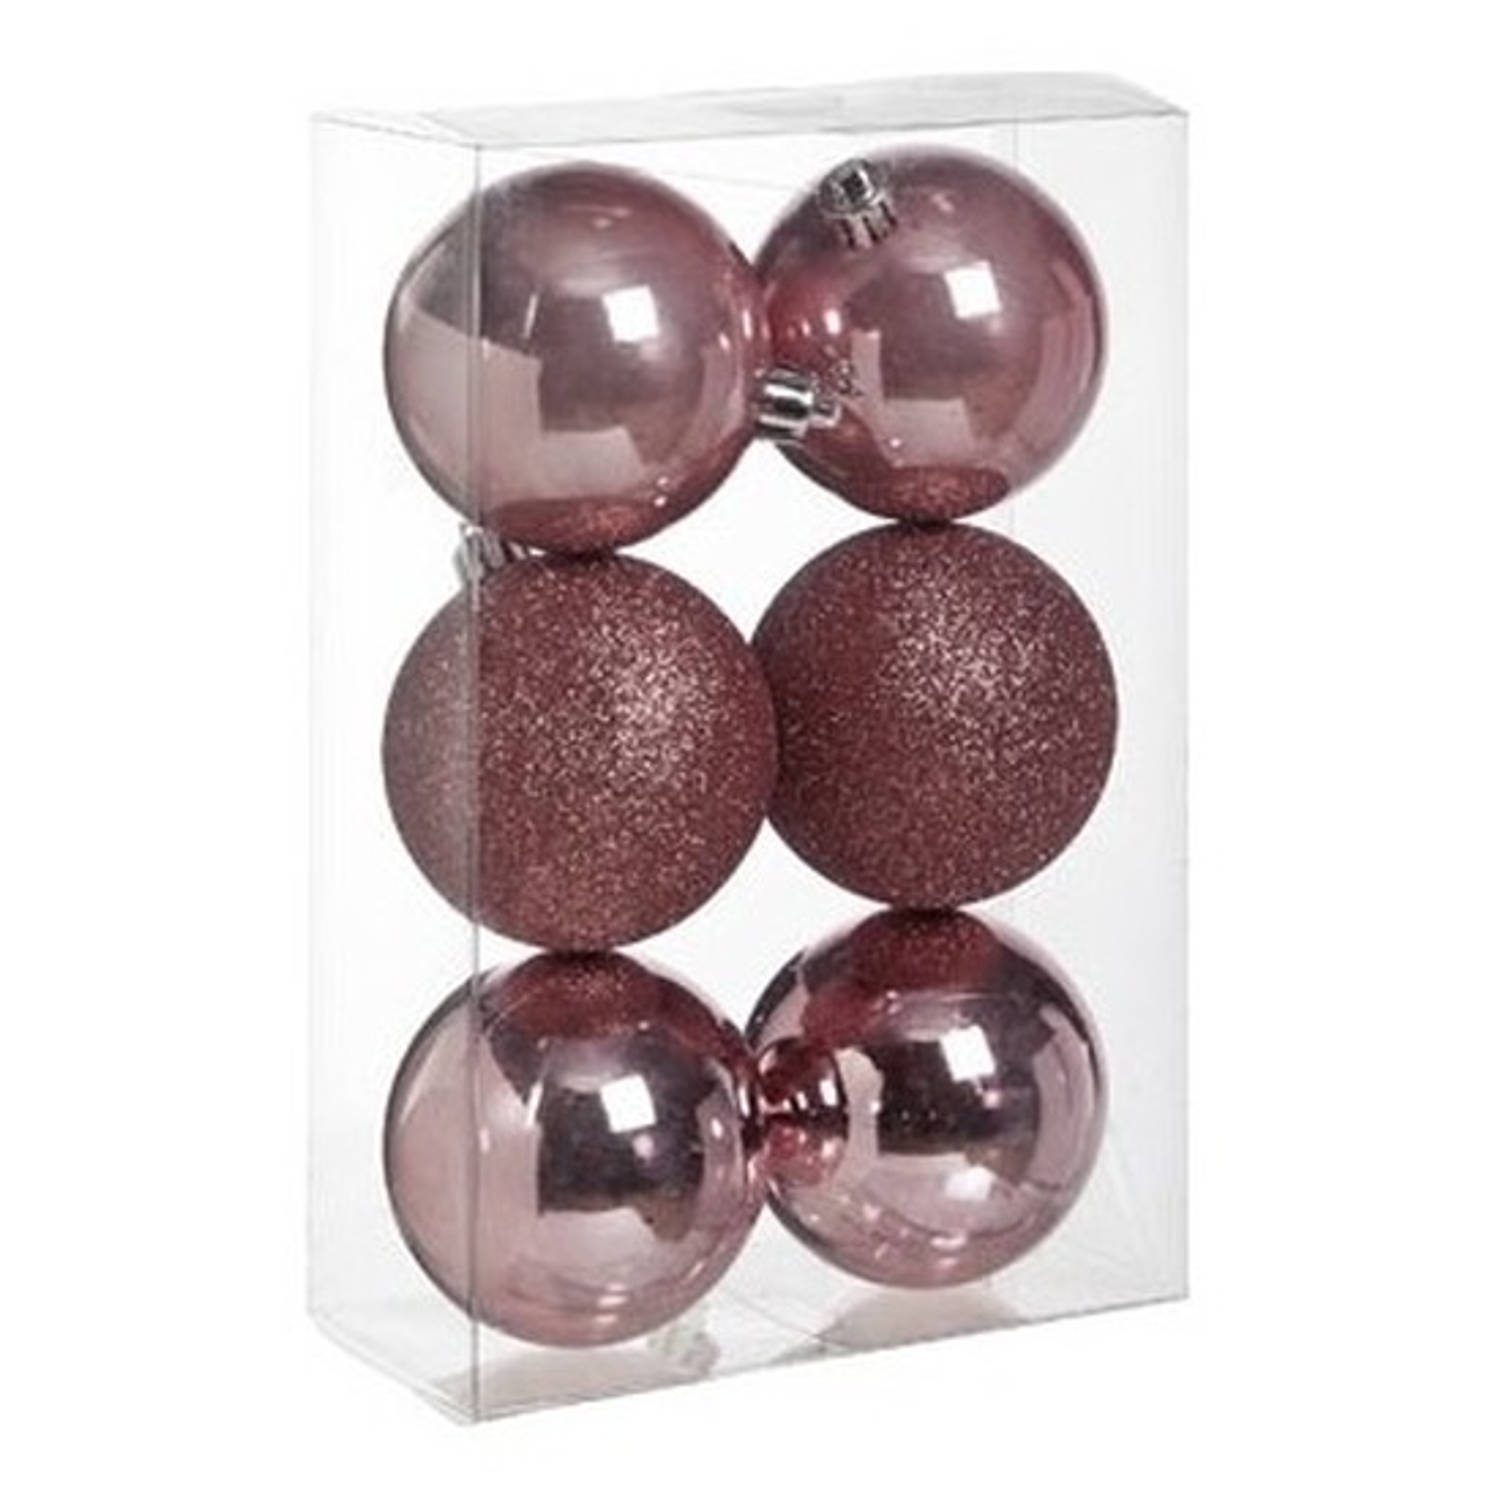 6x Kunststof kerstballen glanzend/mat roze 8 cm kerstboom versiering/decoratie - Kerstbal